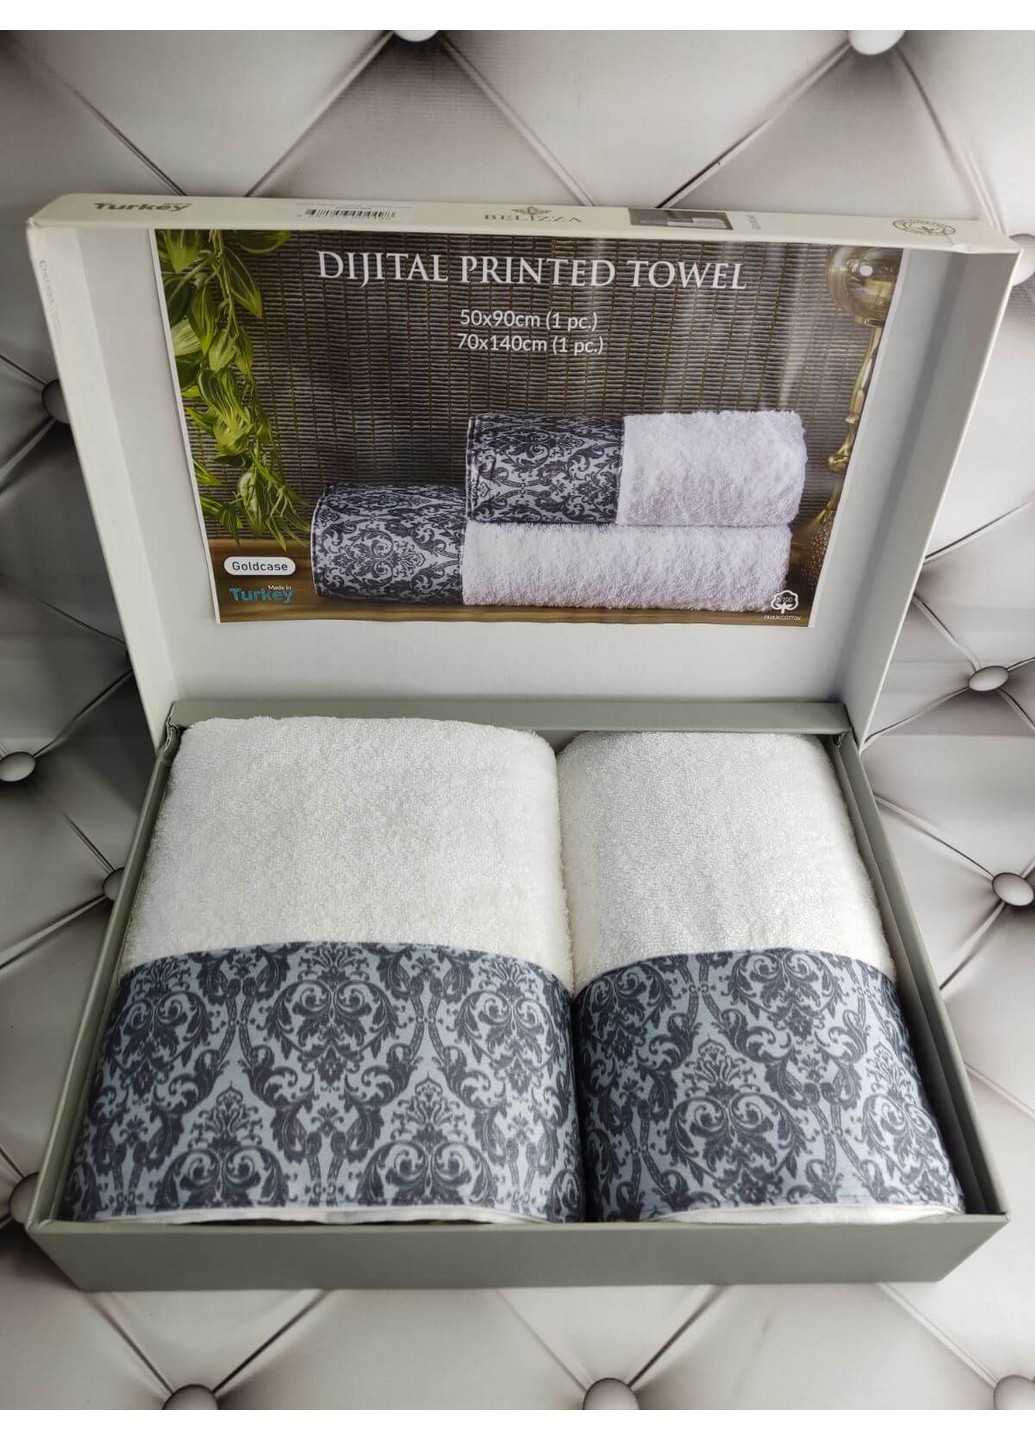 No Brand подарочный набор полотенец для ванной. 50х90 см + 70х140 см белый производство - Турция